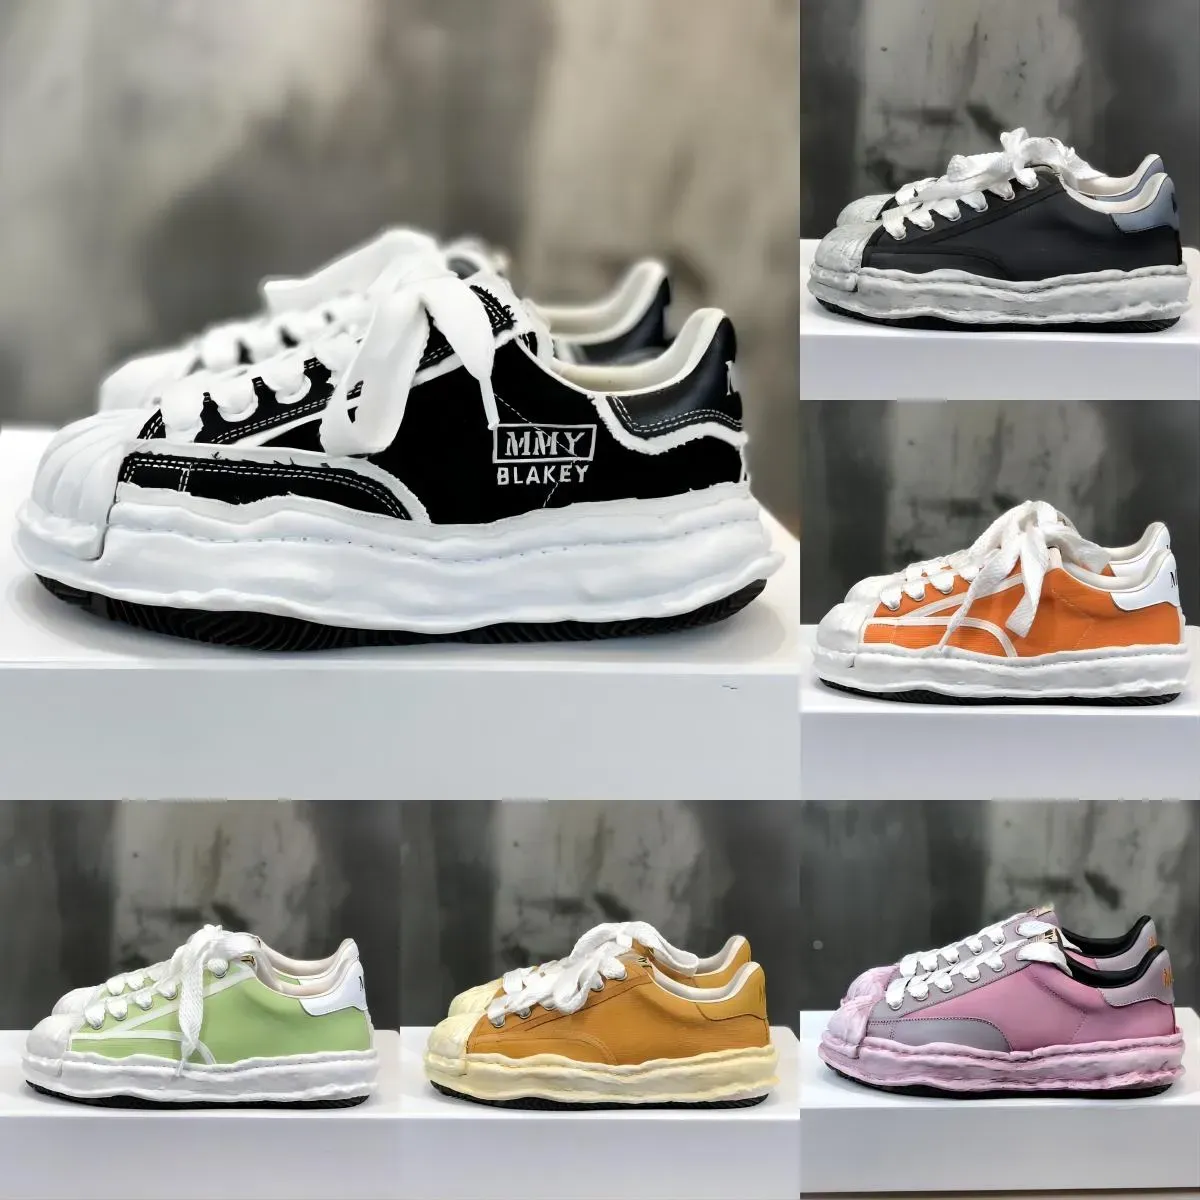 Designer Dissoing Canvas Schoenen Gewassen Stijl Casual Schoen Dames Heren Lace-up Maison Mihara Yasuhiro Rubber Trainers Sneaker